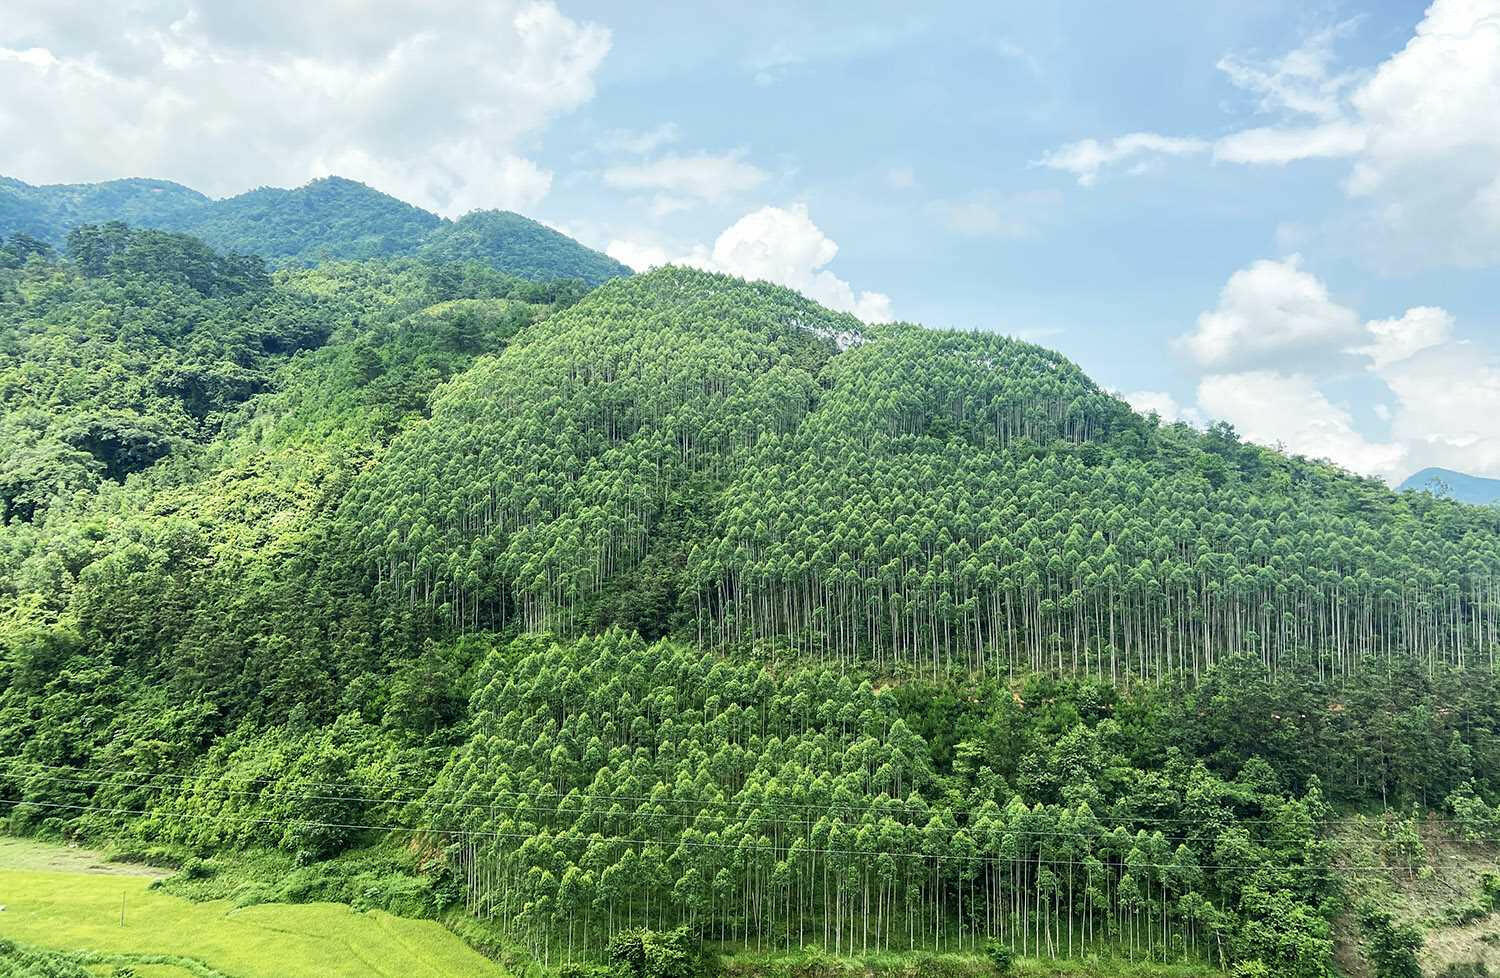 Tại địa phương em có những loại rừng nào? Hãy kể tên rừng ở Việt Nam mà em biết.